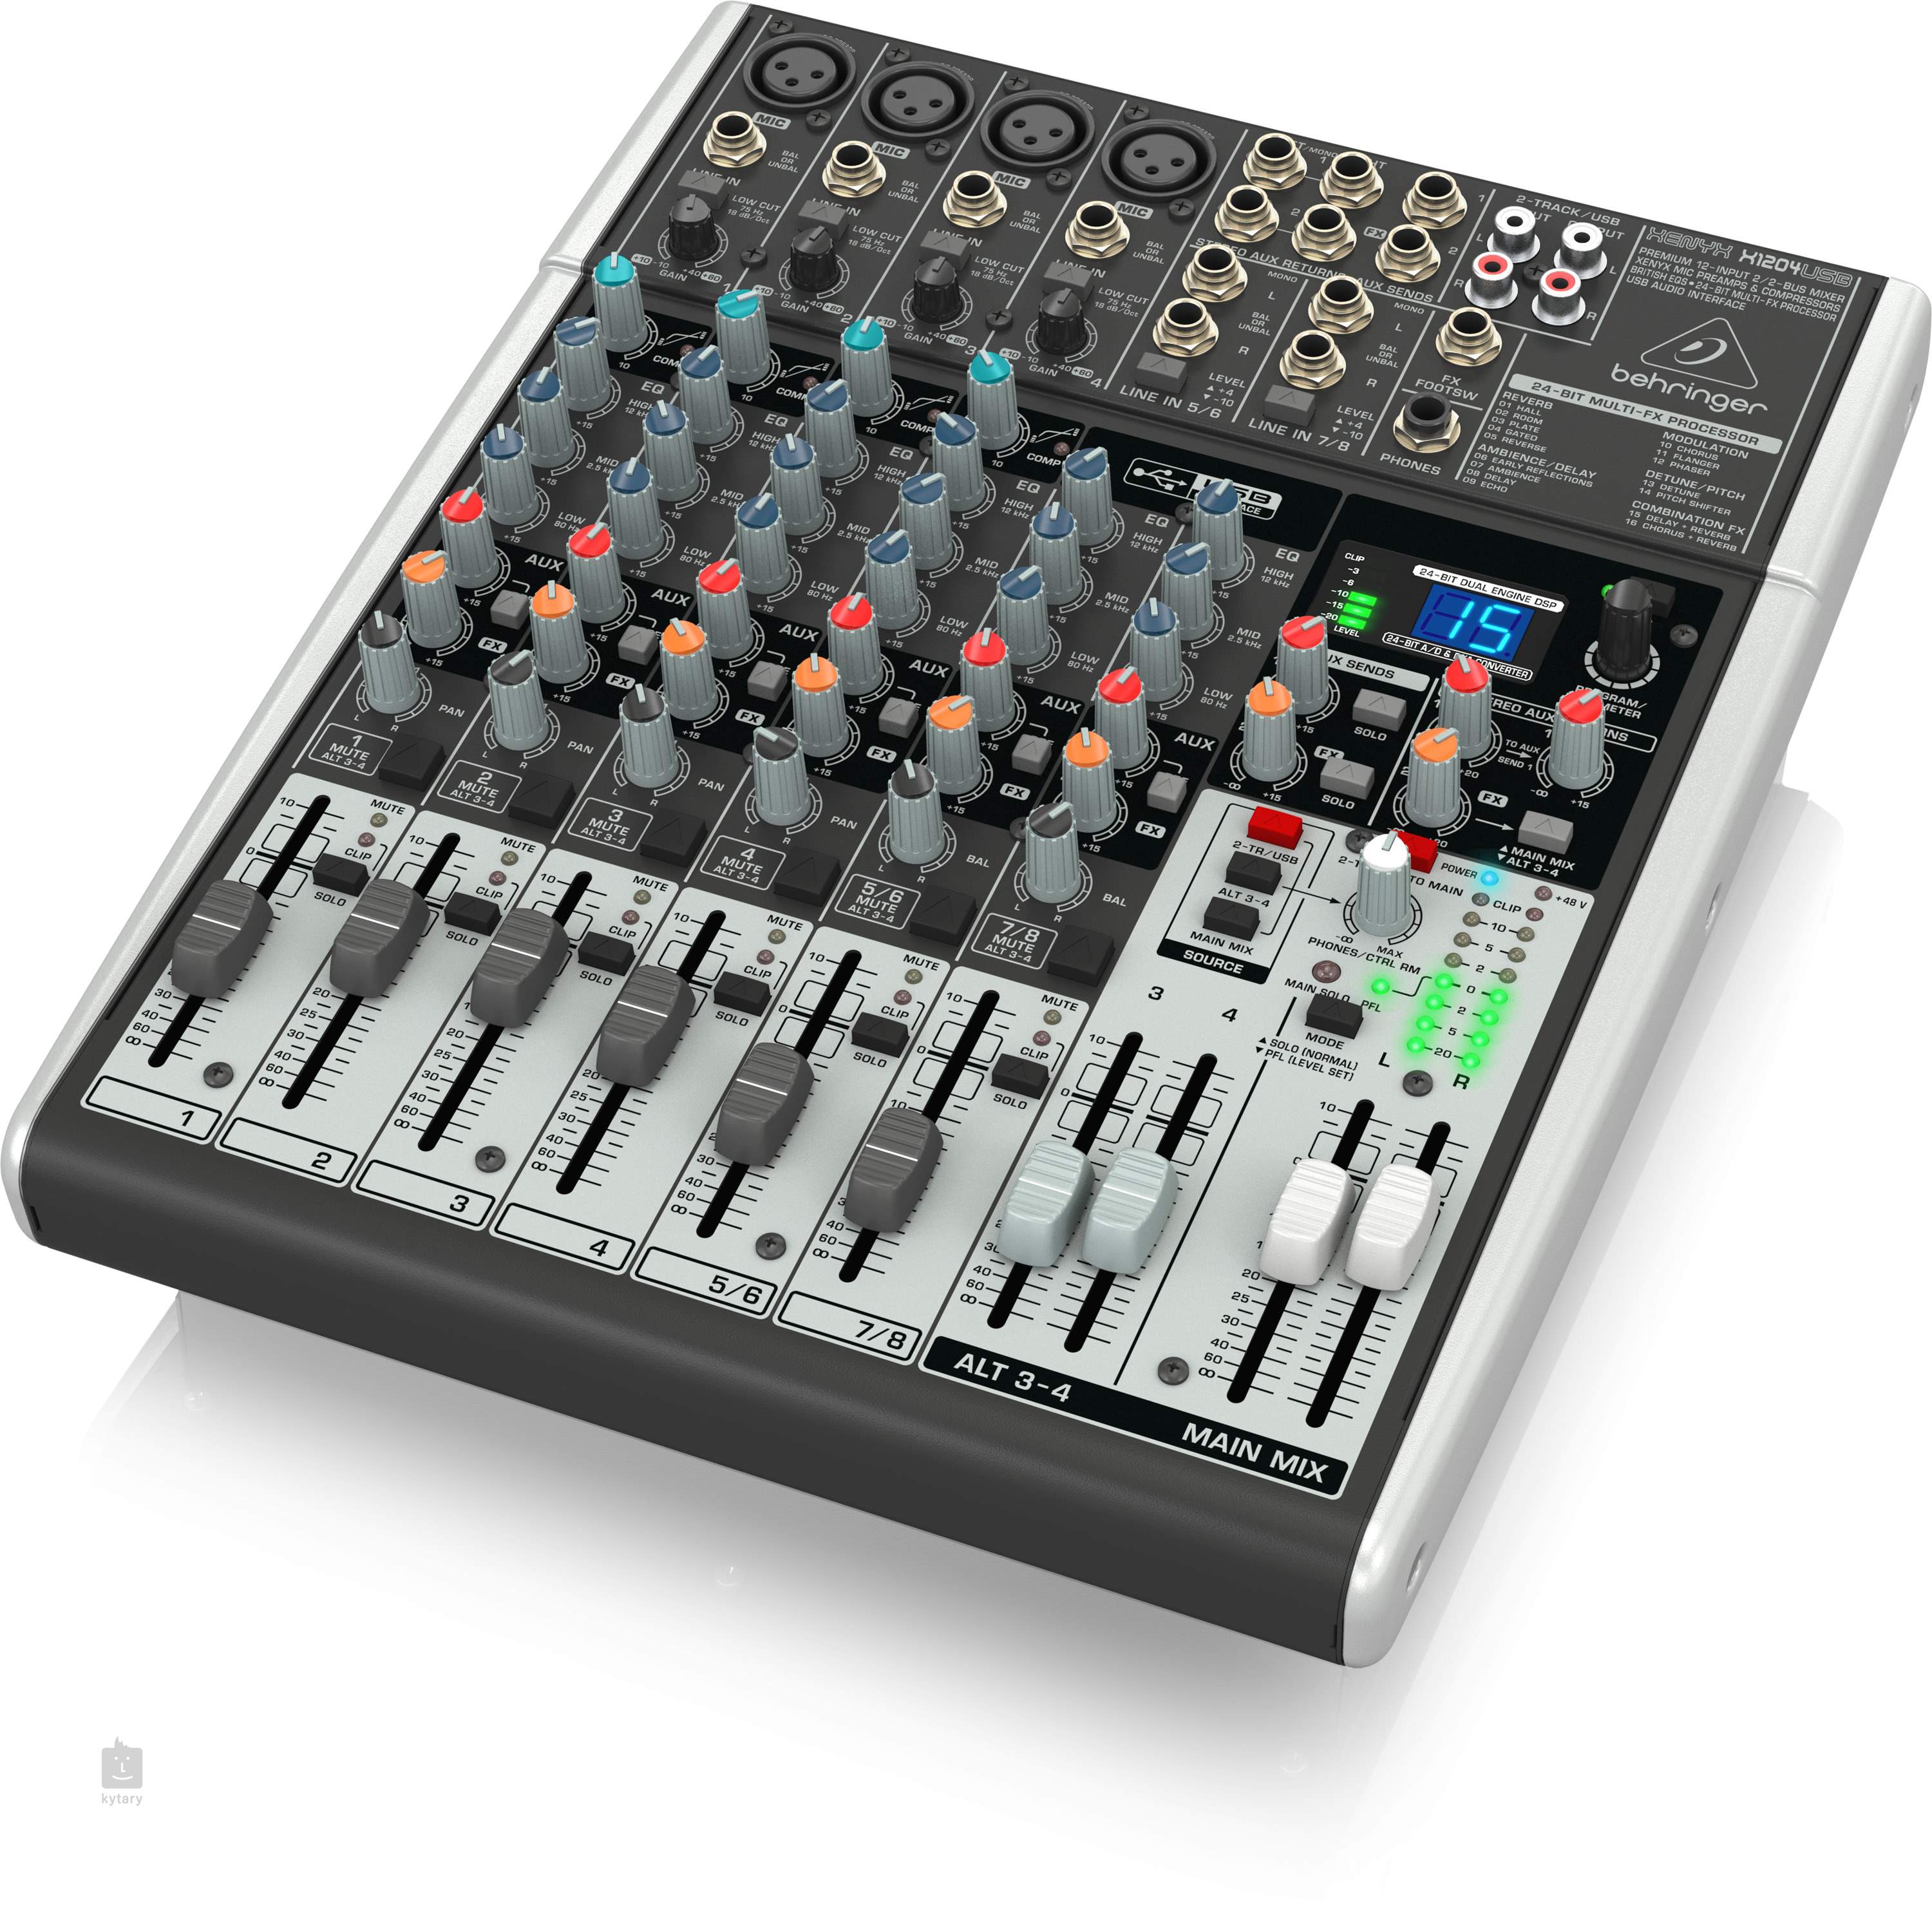 behringer xenyx x1204usb usb audio mixer